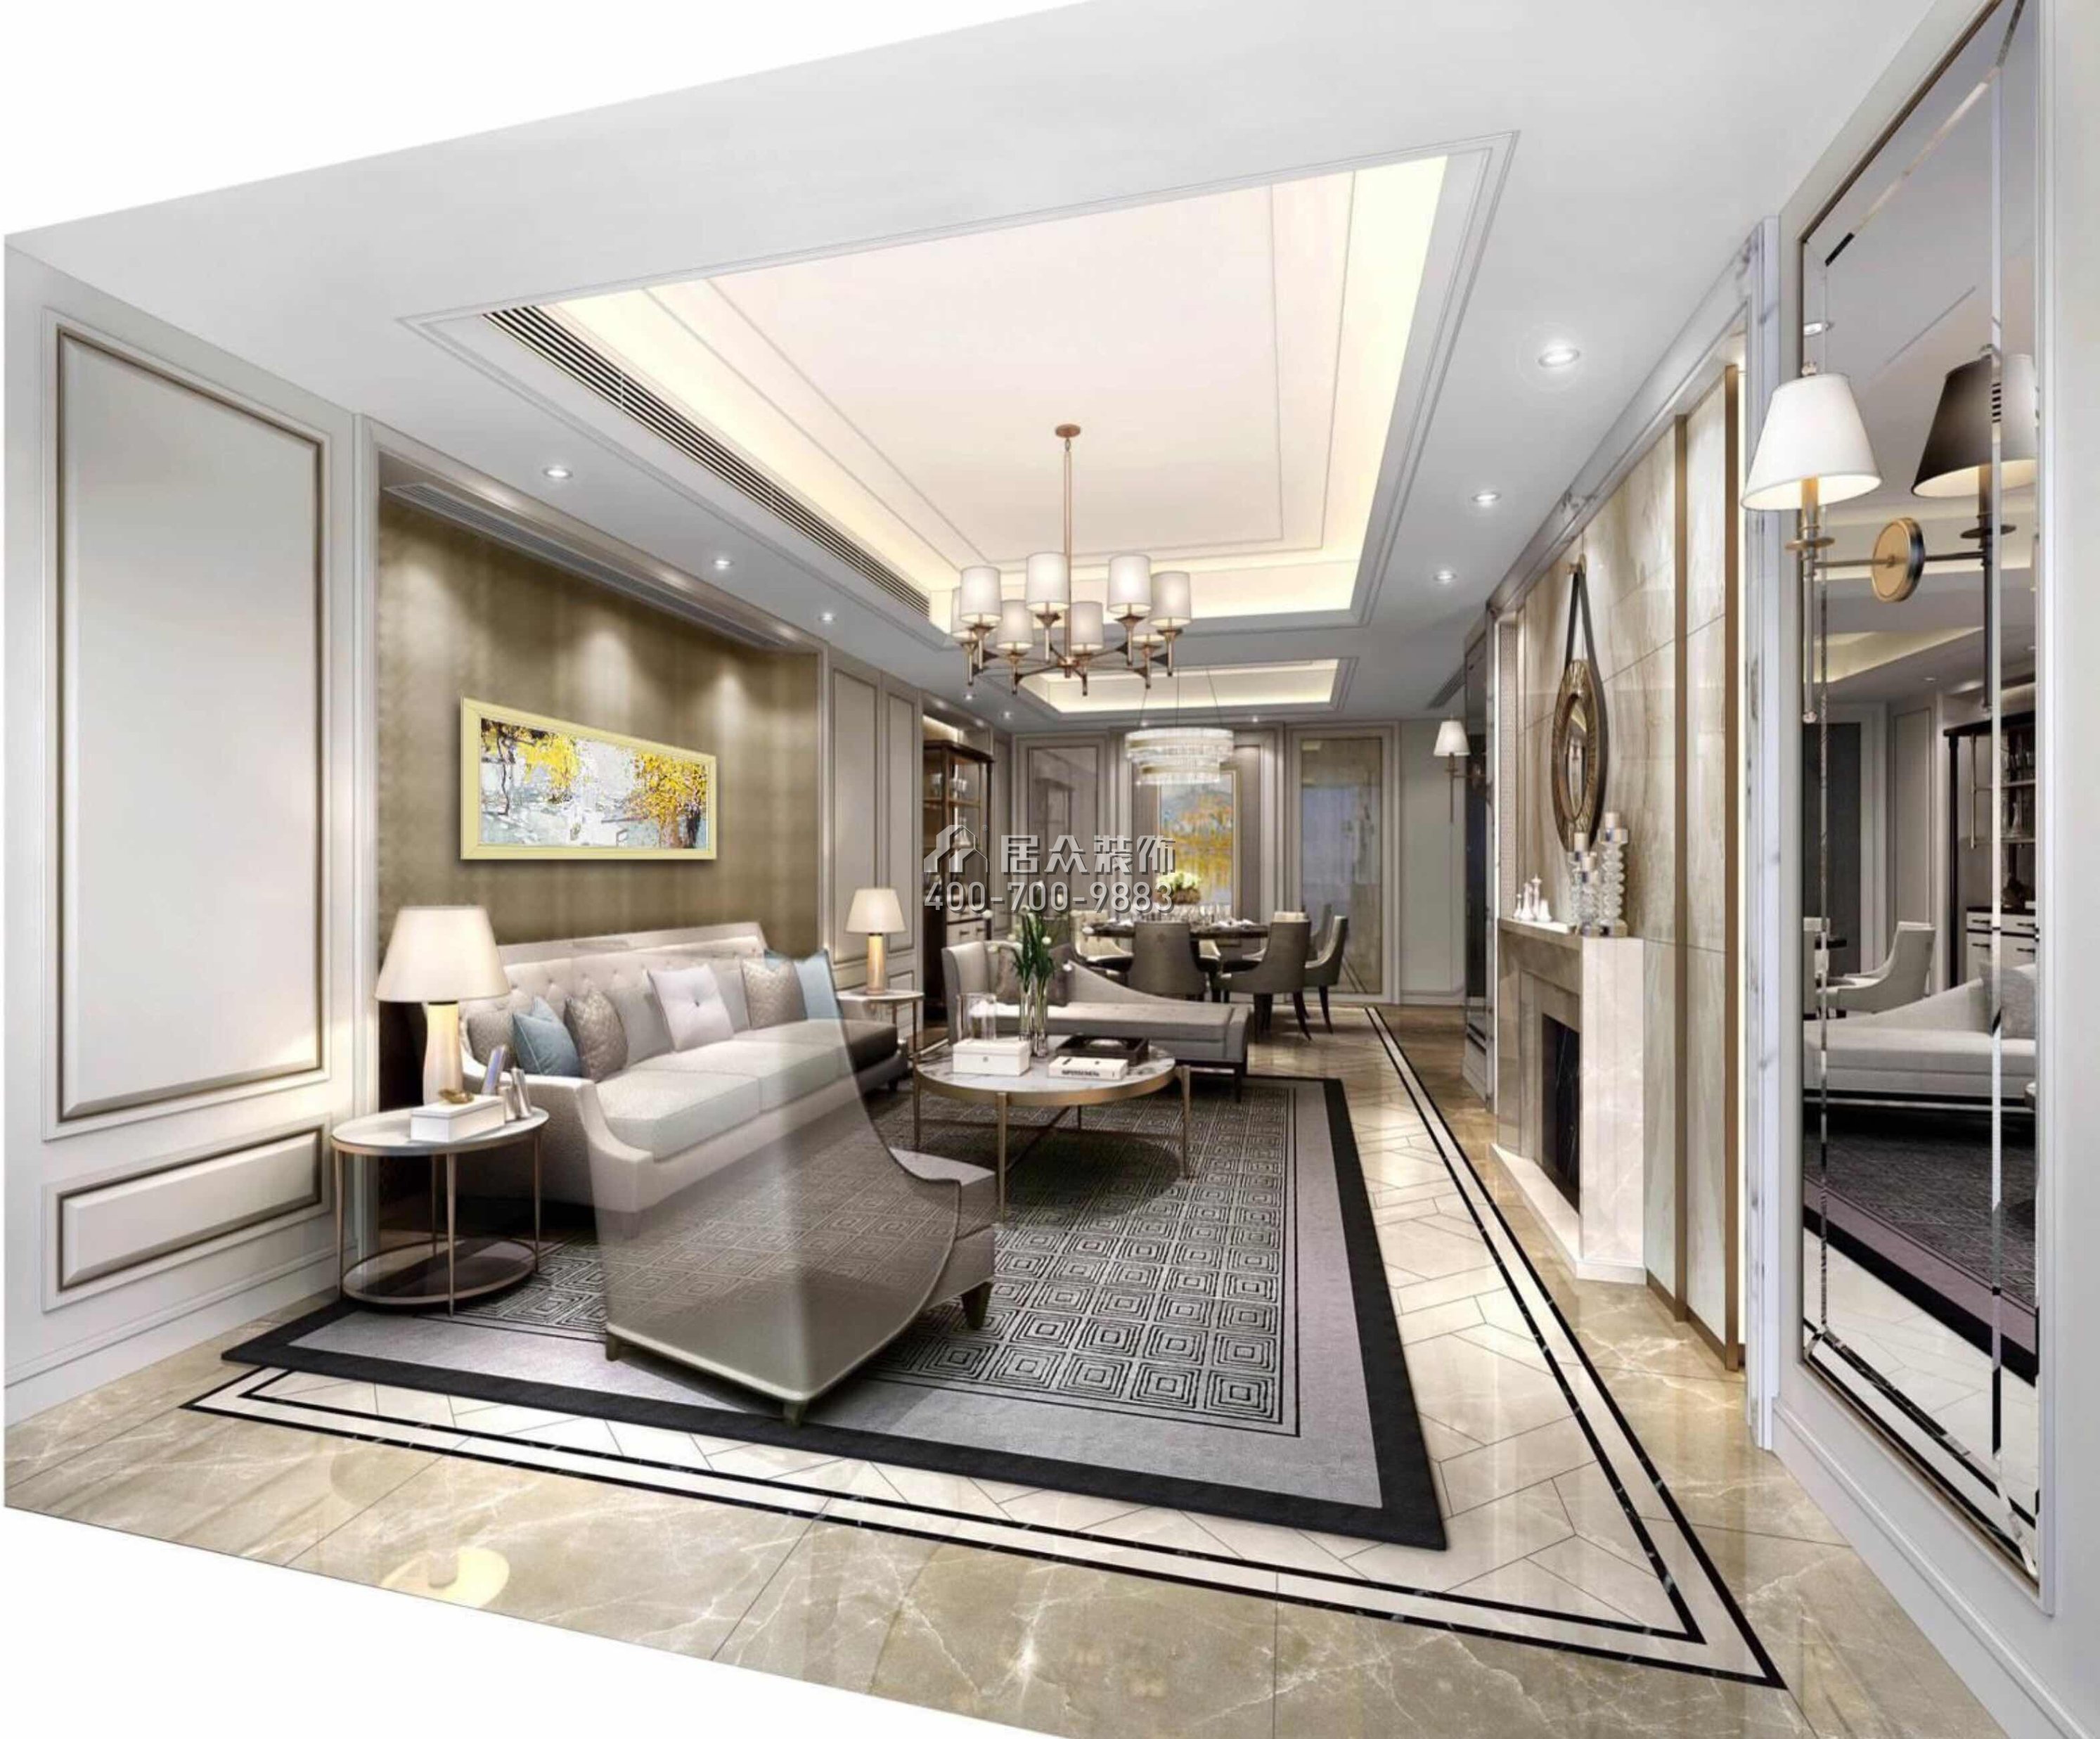 山语清晖一期226平方米欧式风格平层户型客厅装修效果图